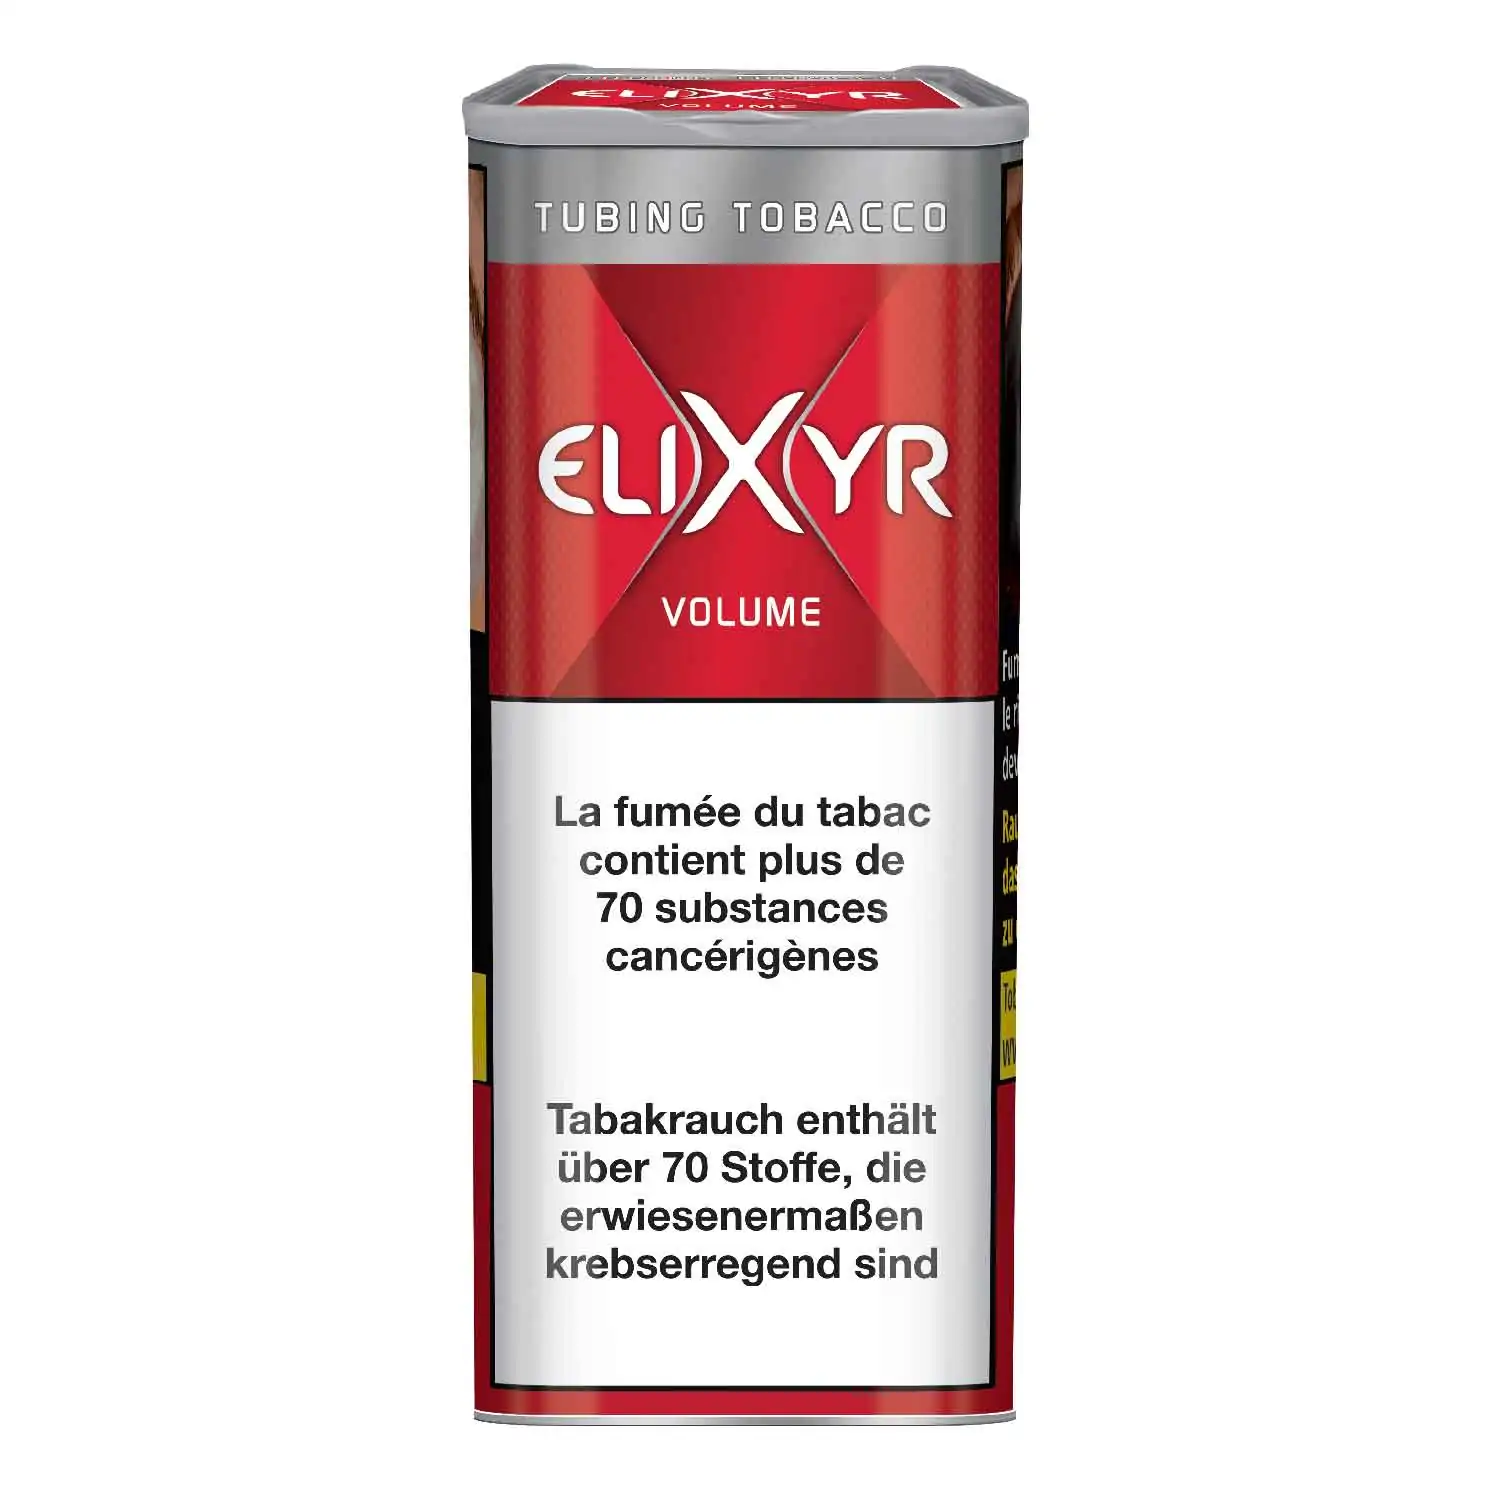 Elixyr volume maxx 125g - Buy at Real Tobacco